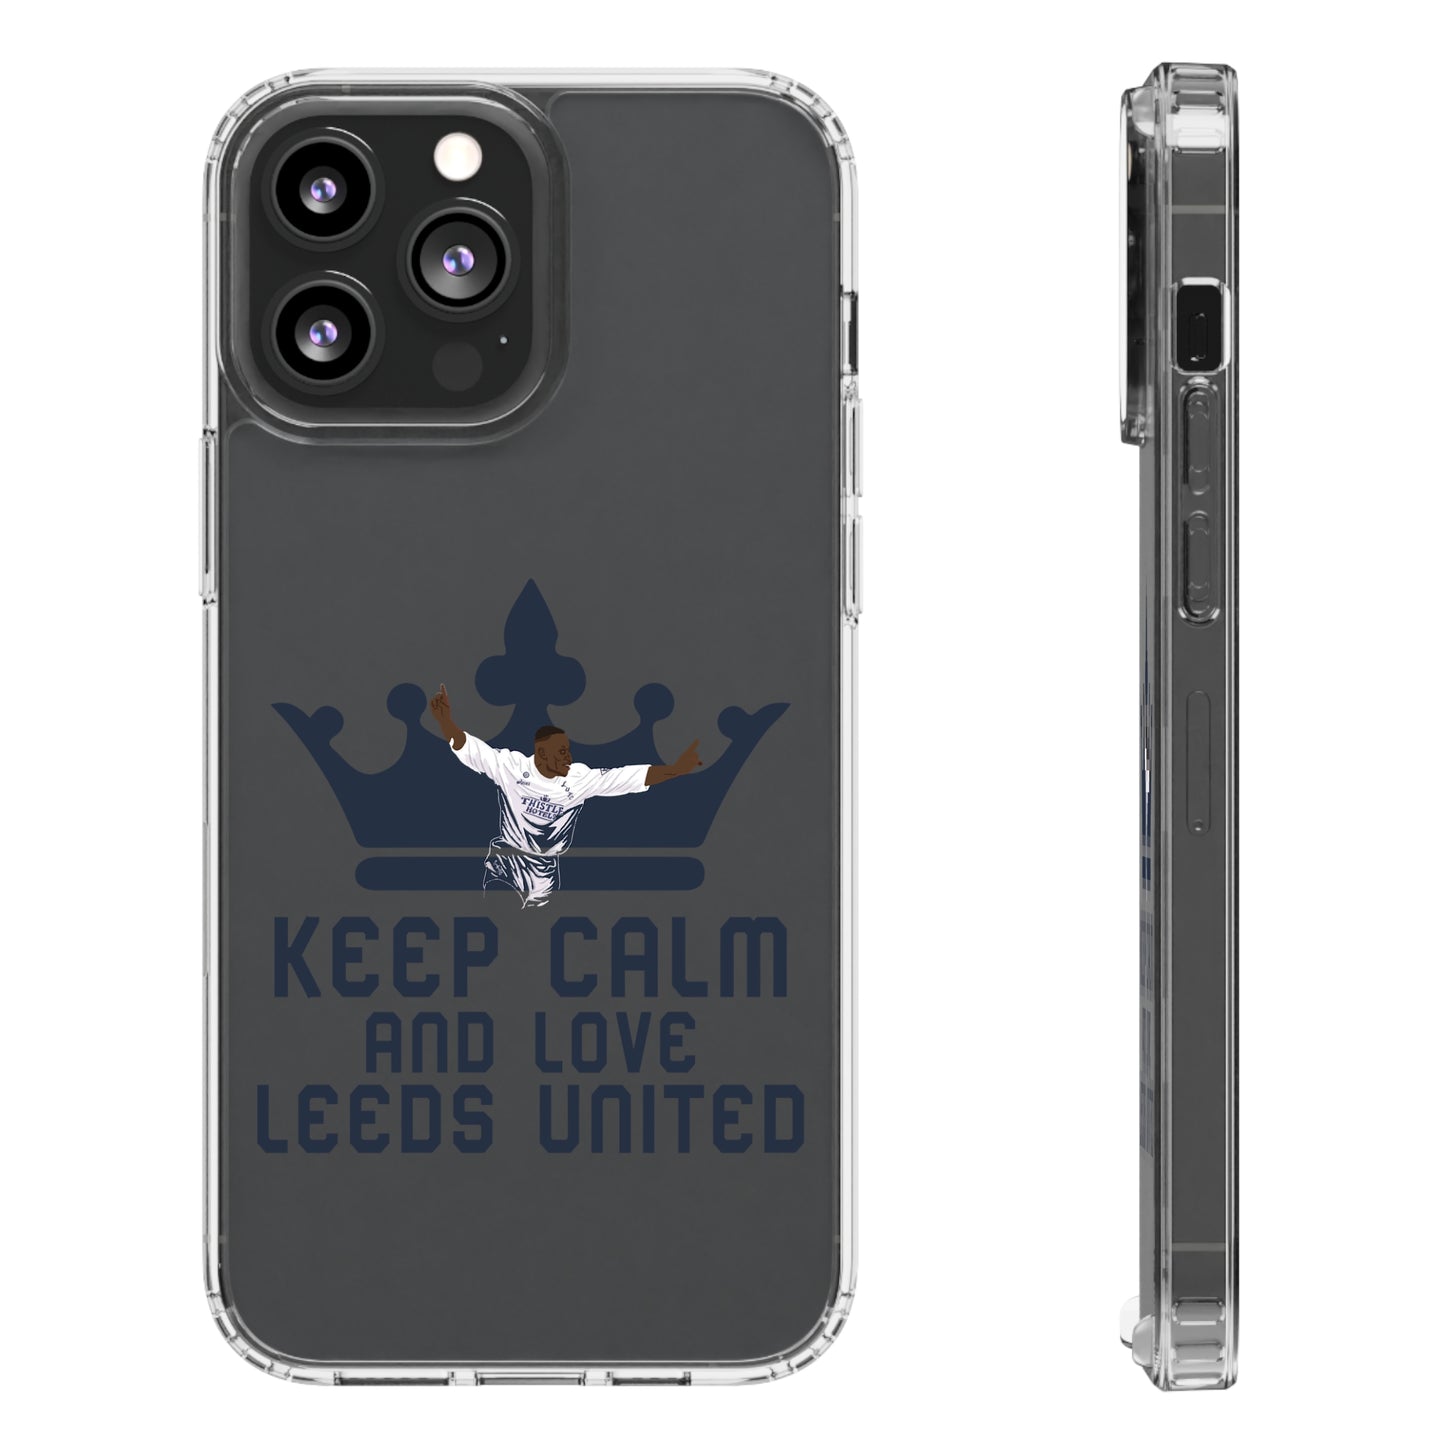 Funda transparente para teléfono -
'Mantén la calma y ama al Leeds United'